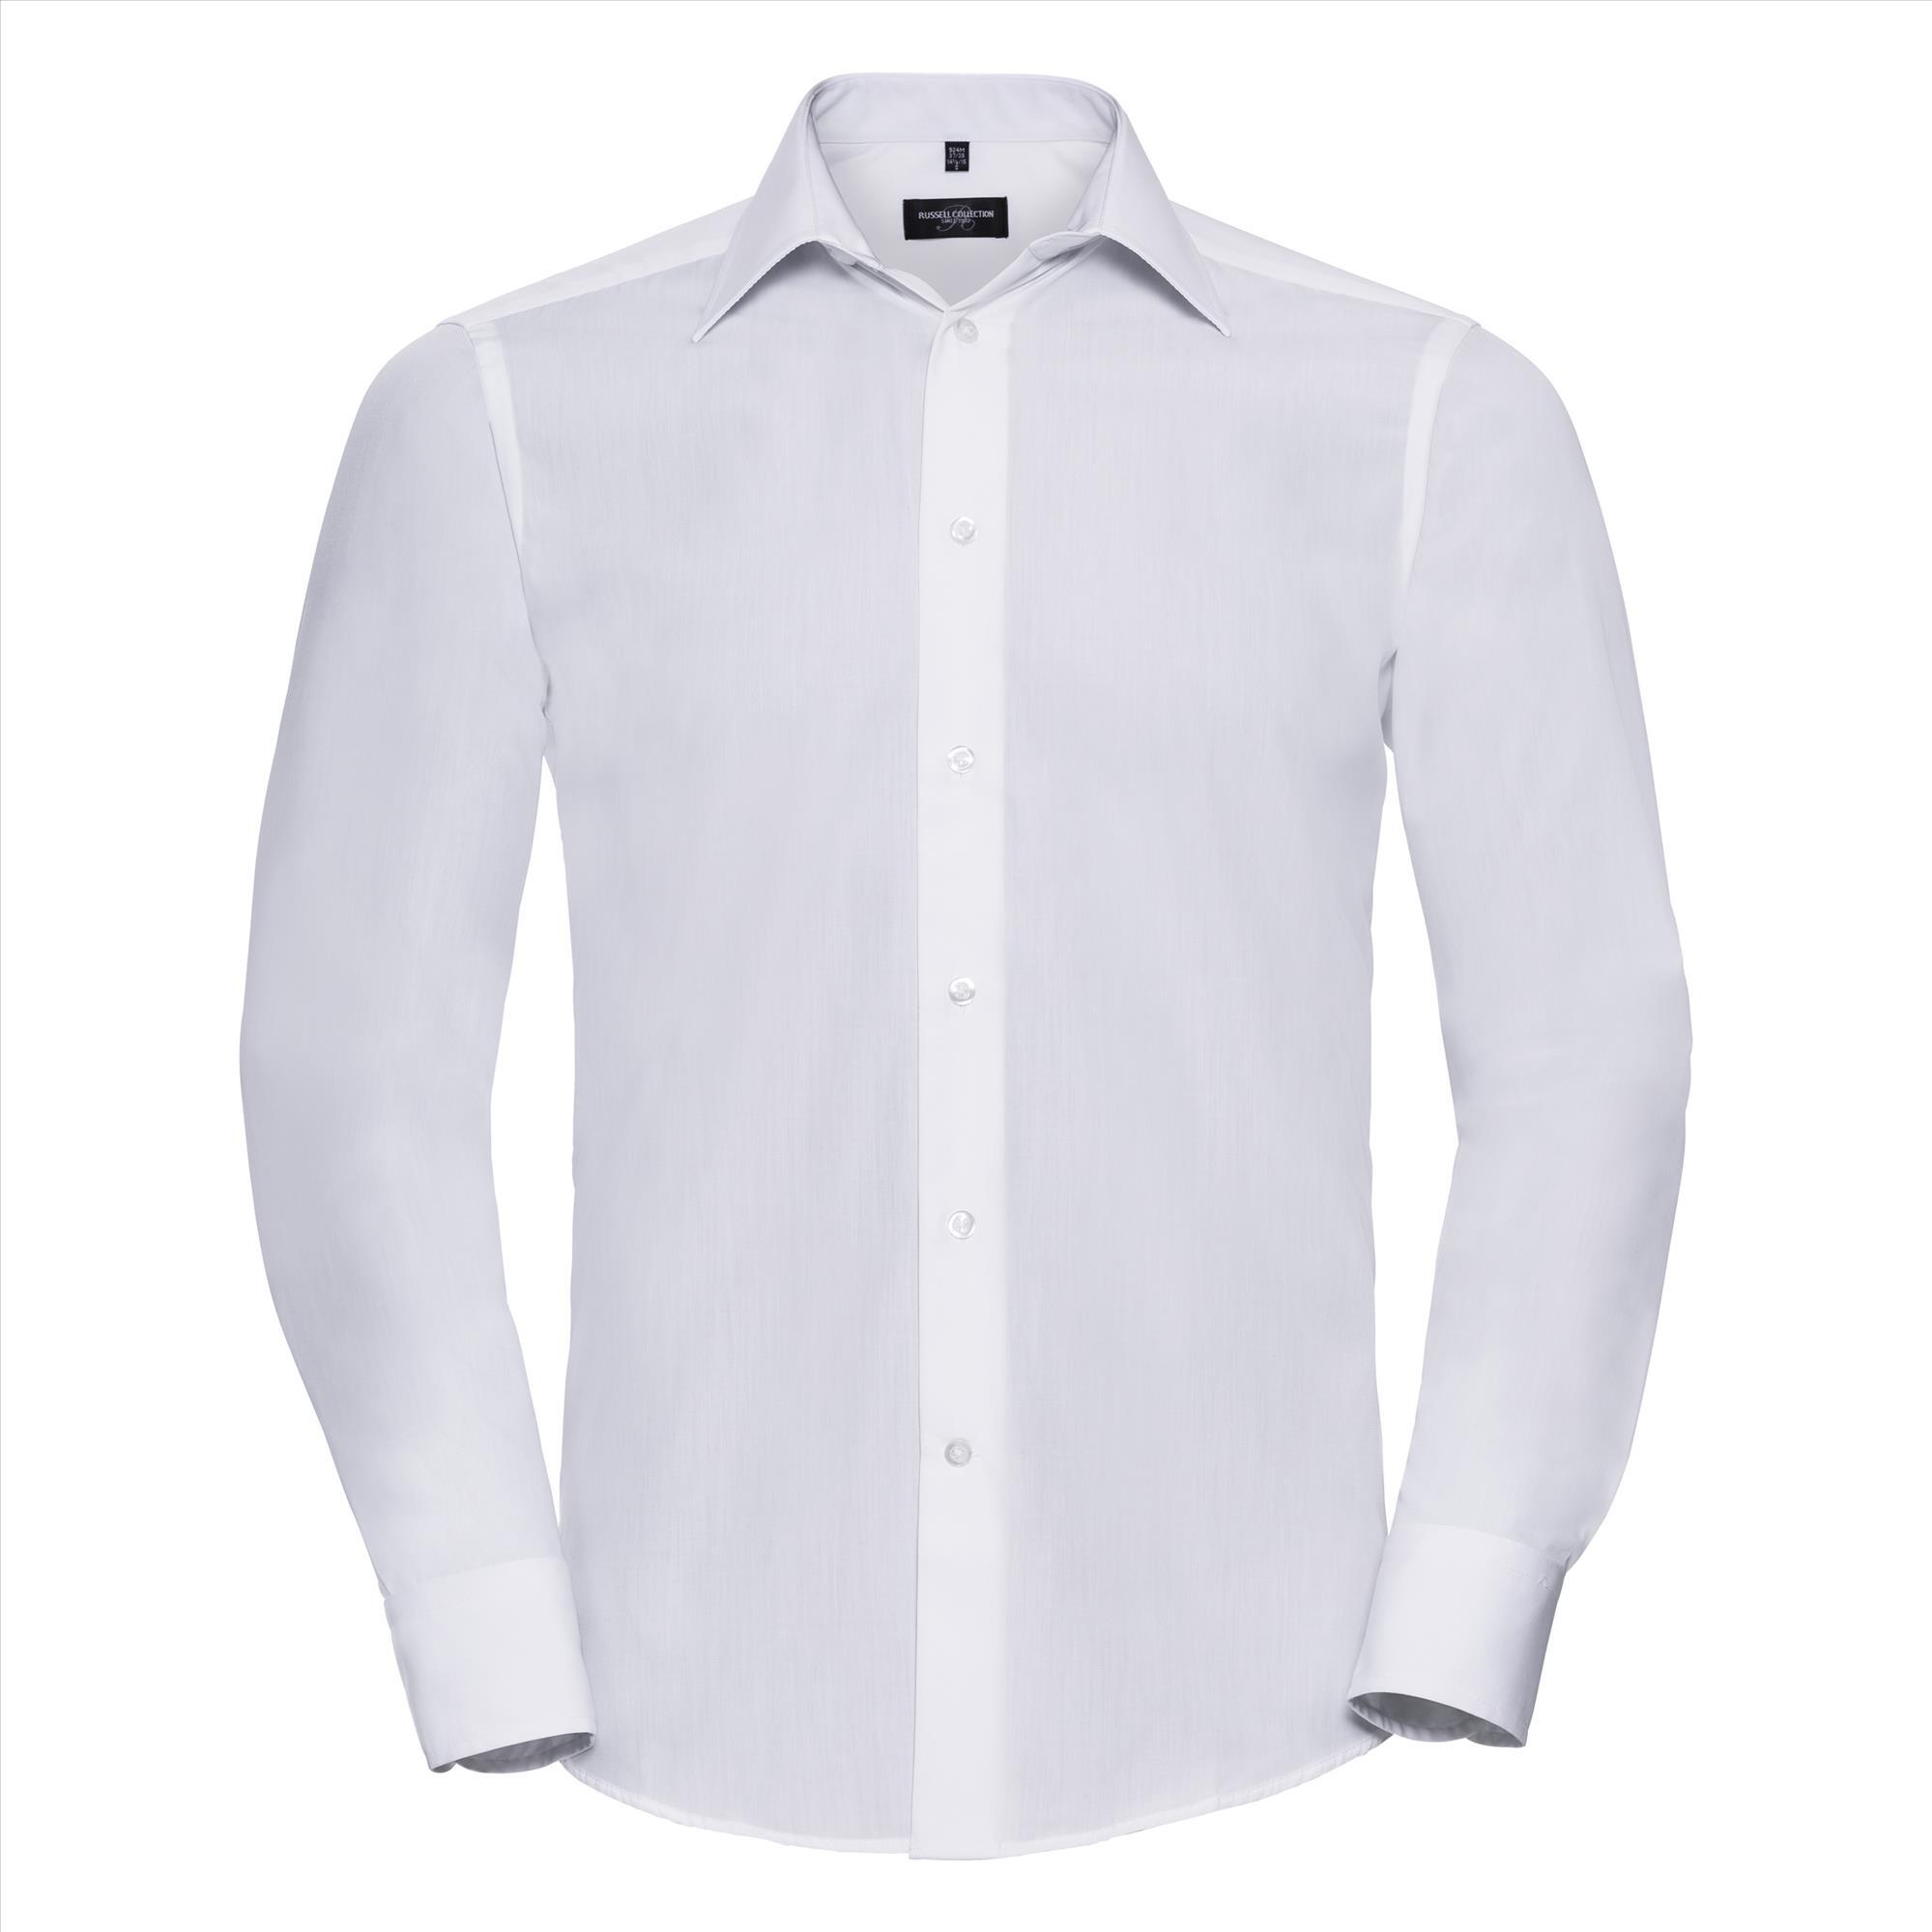 Heren overhemd wit te bedrukken met bedrijslogo te personaliseren